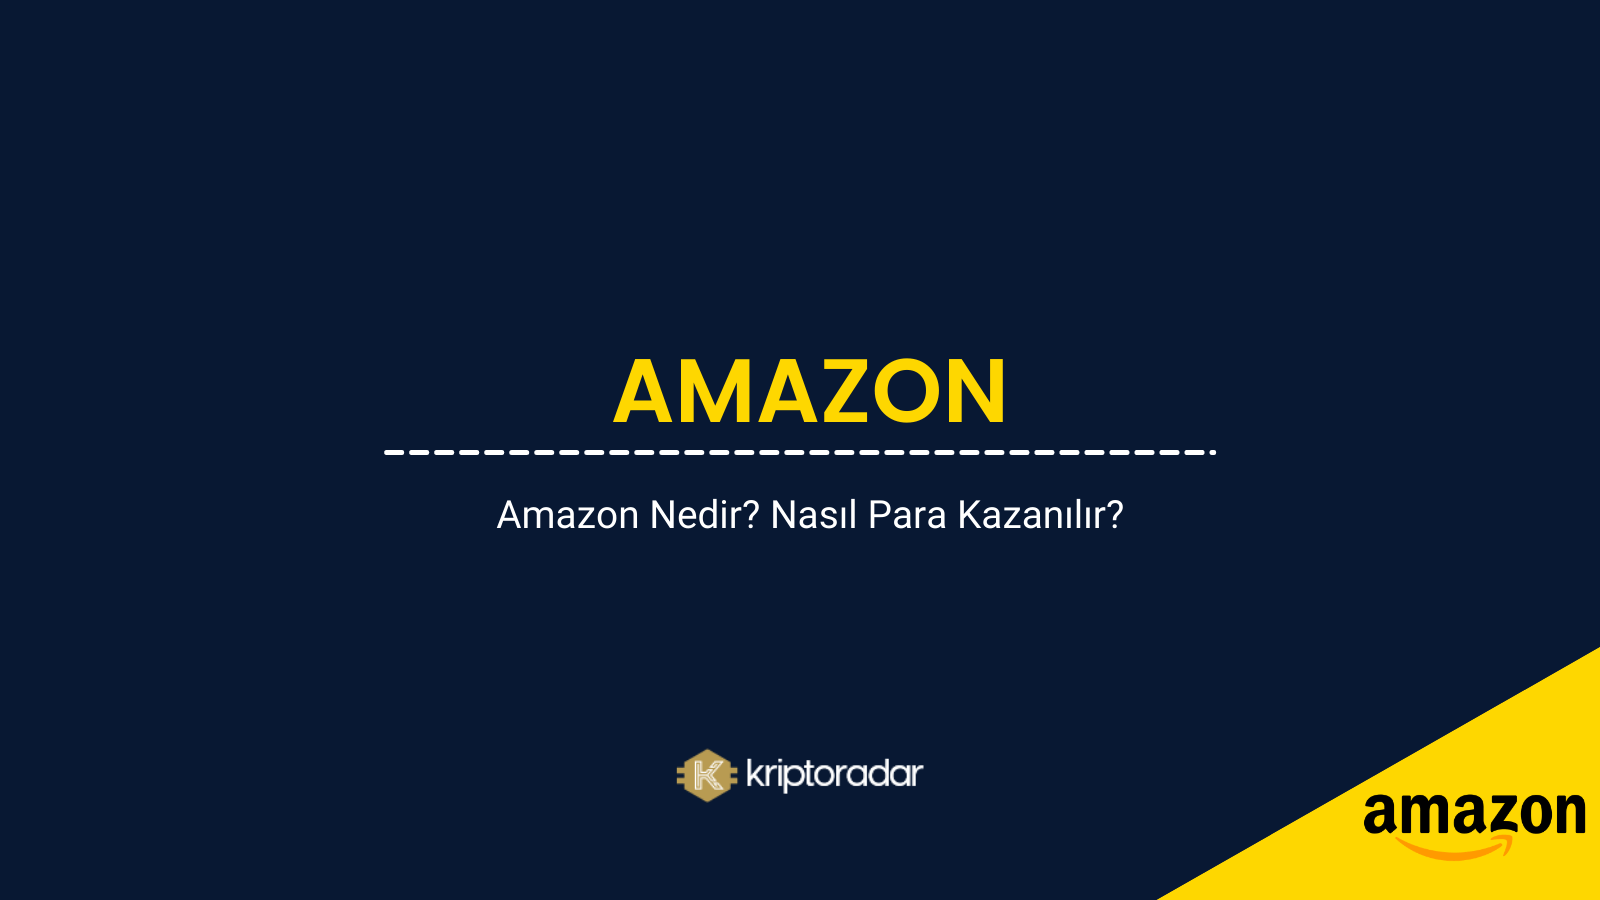 Amazon Nedir? Nasıl Para Kazanılır?